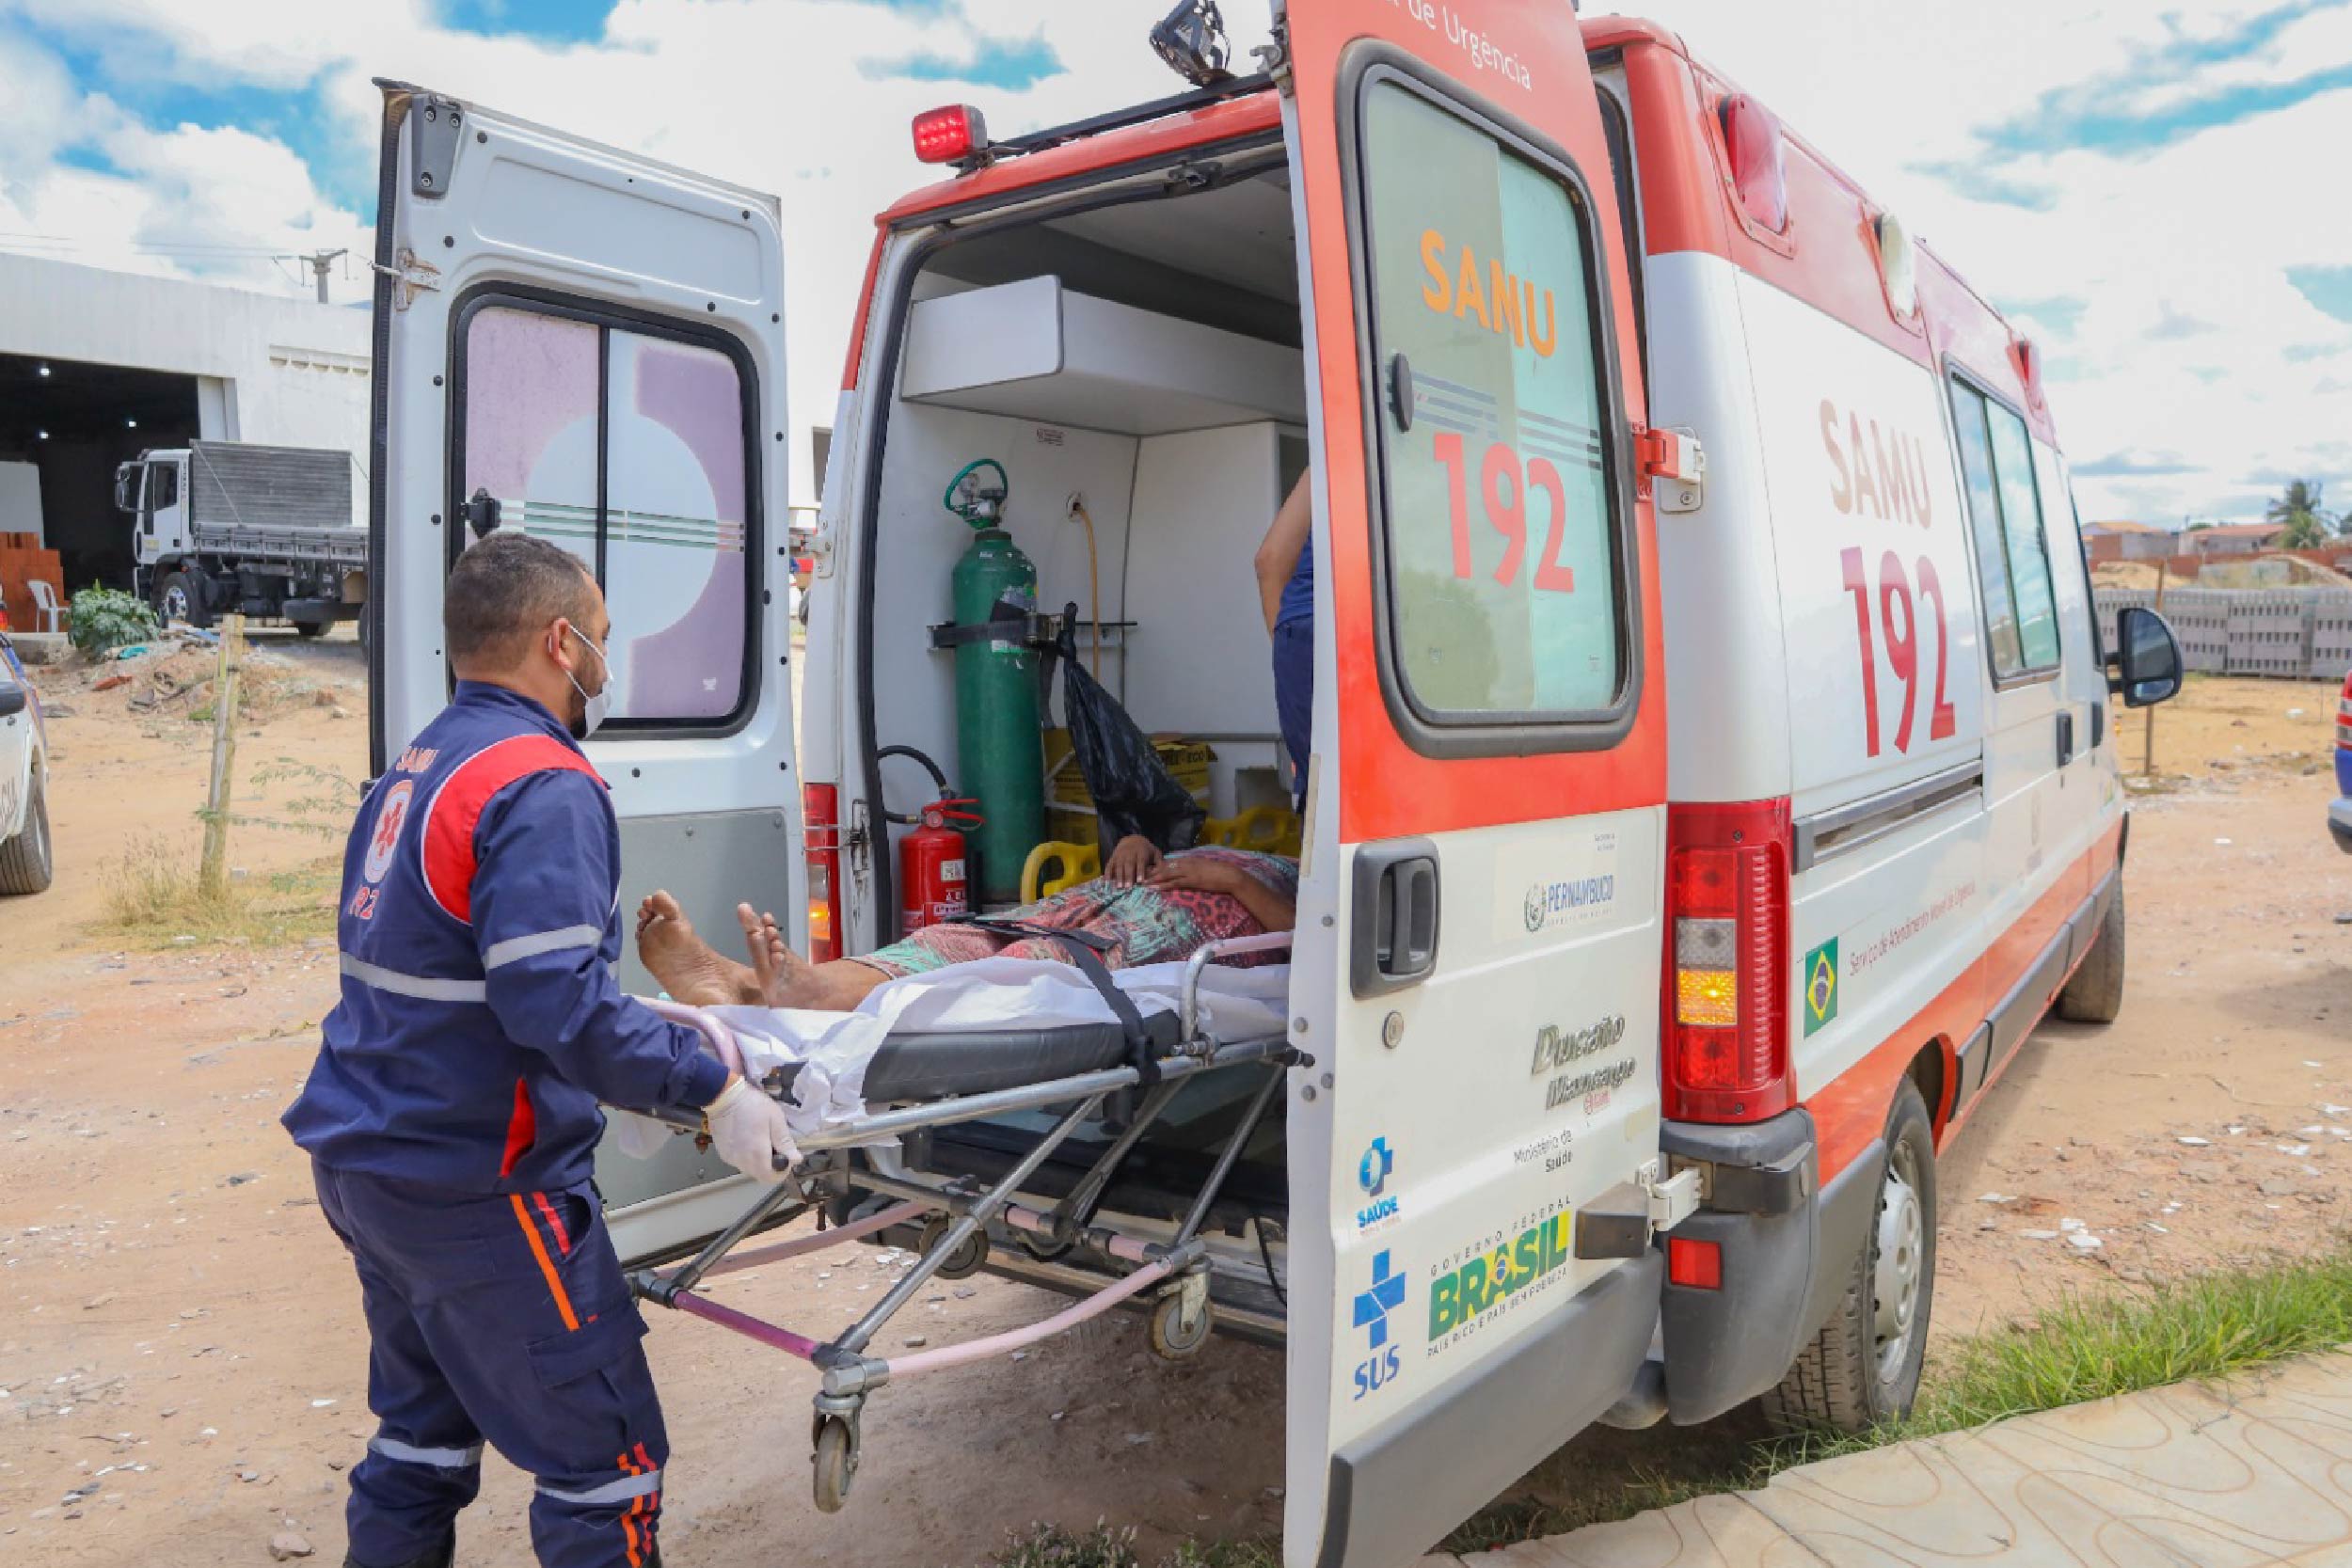 Foto mostra um socorista do SAMU transportando uma pessoa em uma maca para dentro de uma ambulância. O socorrista está de costas e a pessoa na maca está parcialmente dentro da ambulância, sendo possível ser somente suas pernas.